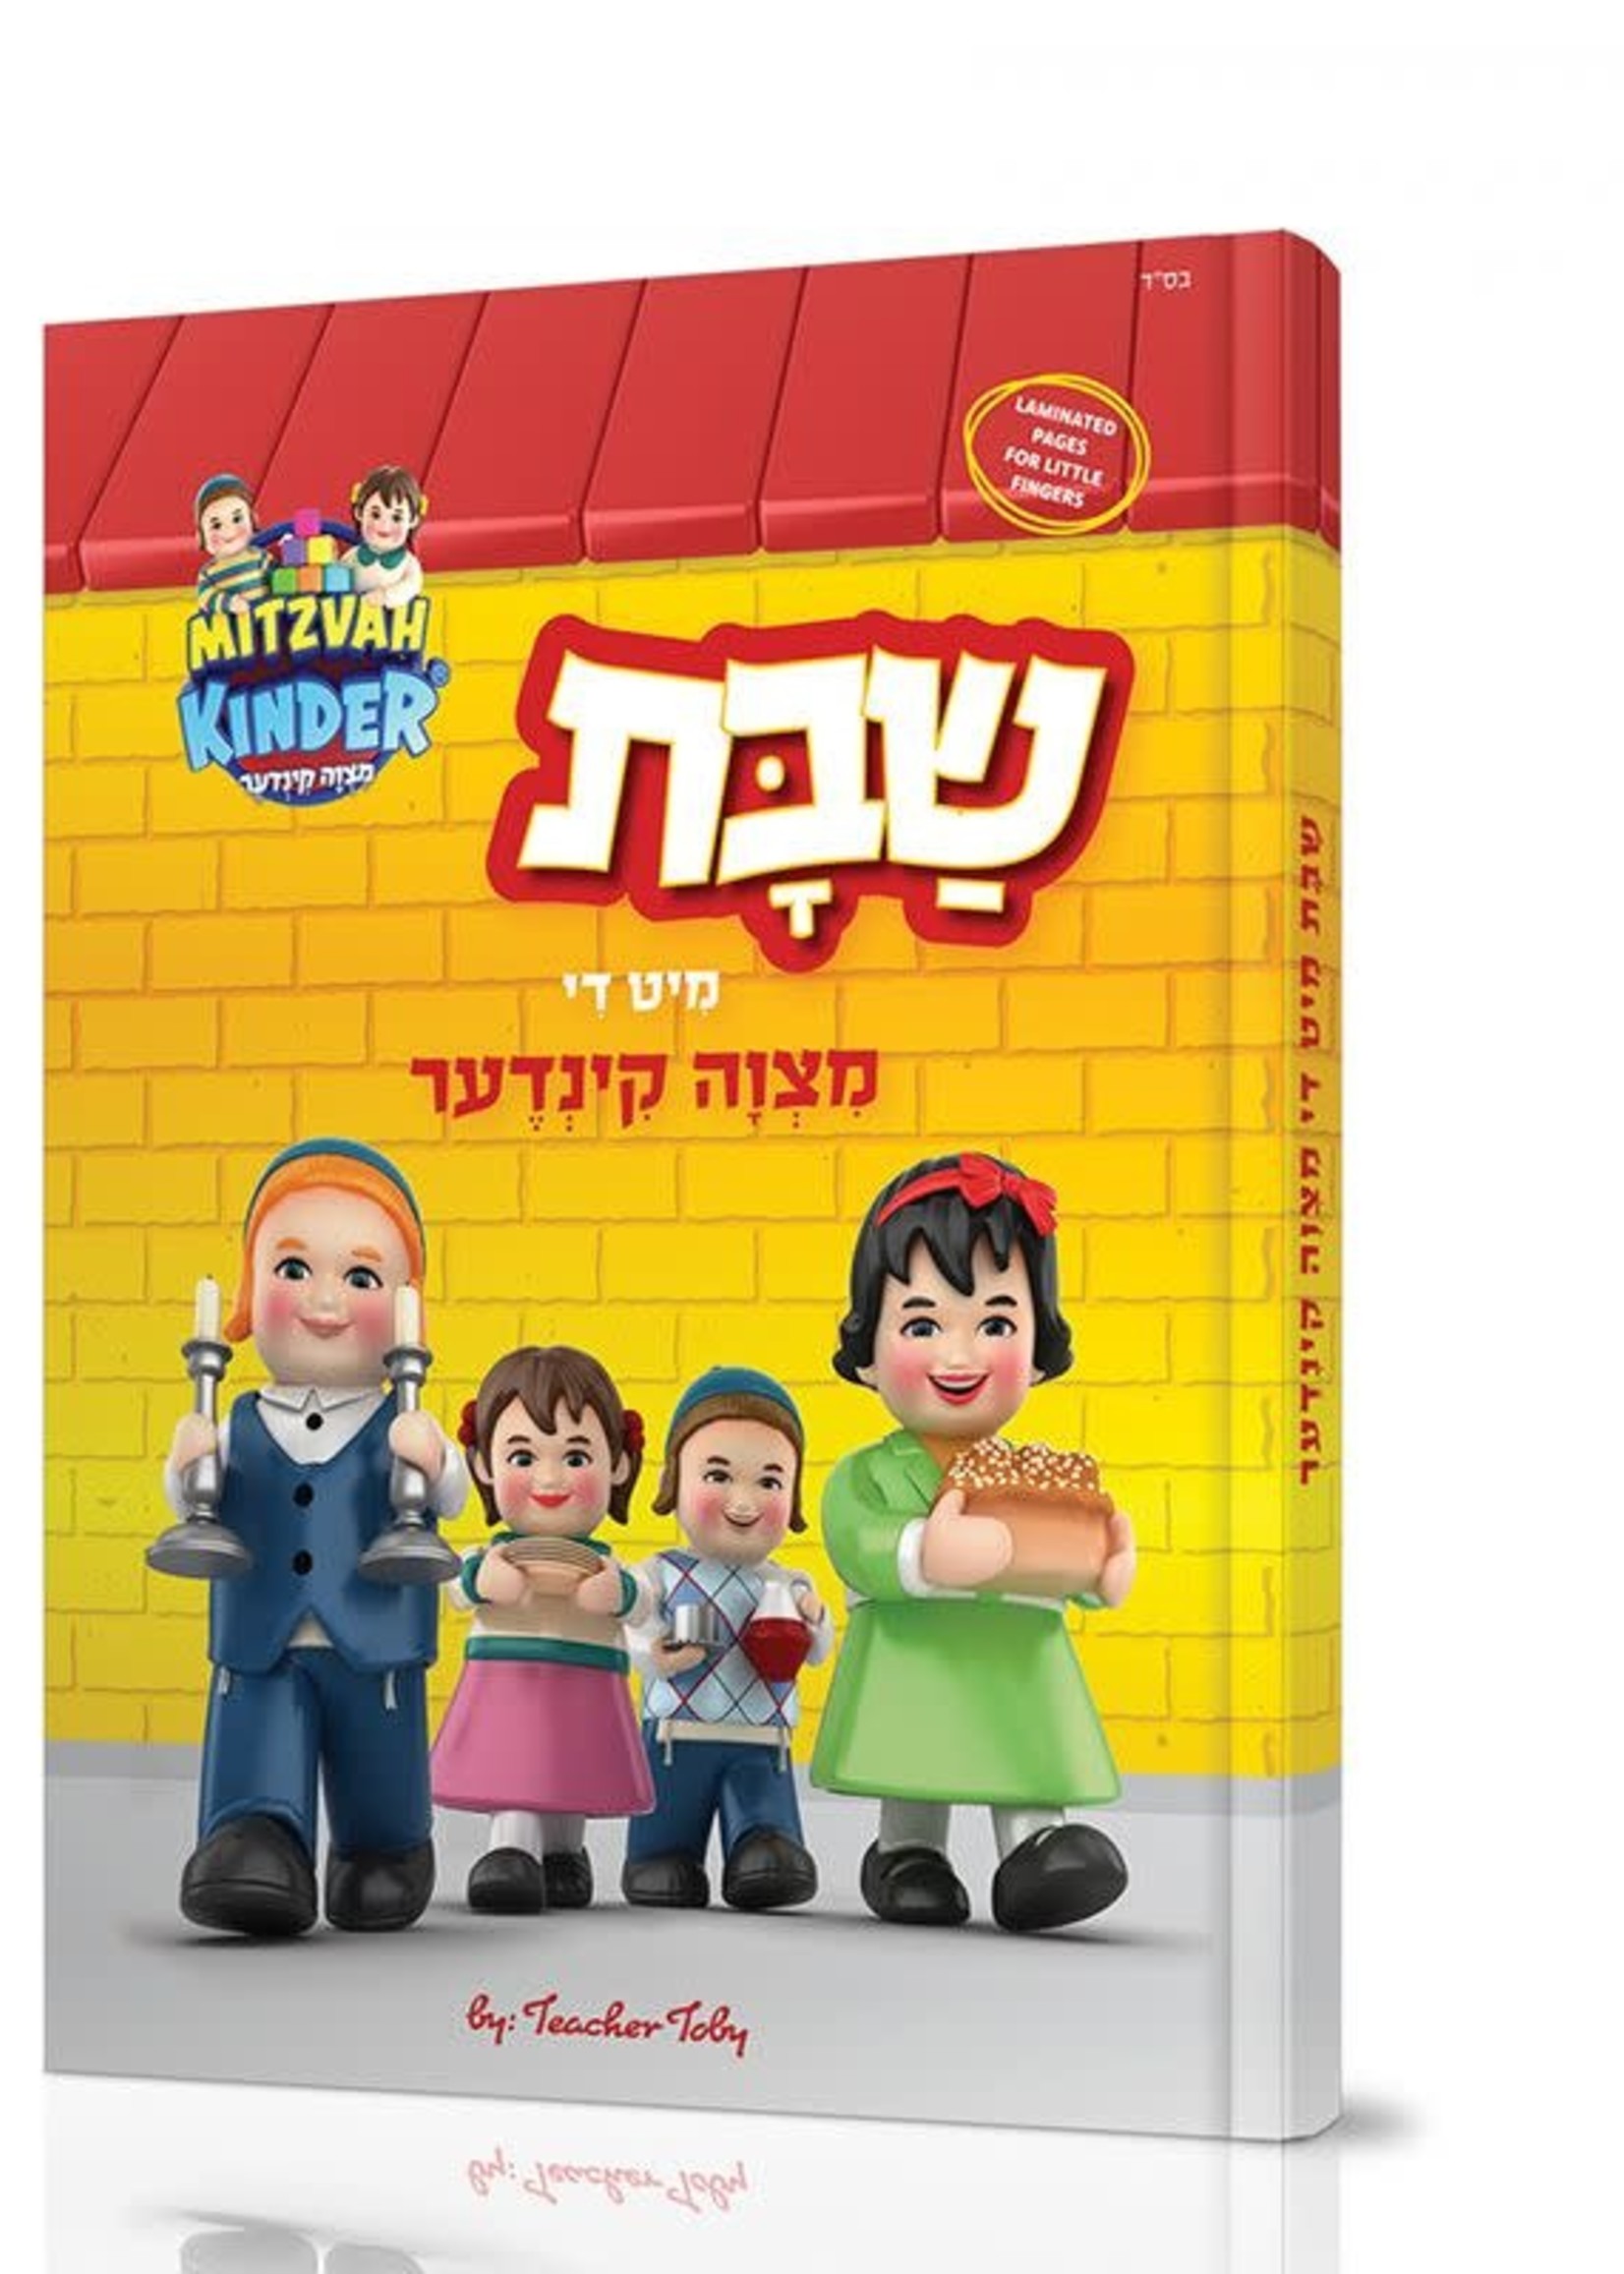 Shabbos Mit Di Mitzvah Kinder - Book/  שבת מיט די מצוה קינדער- ביך